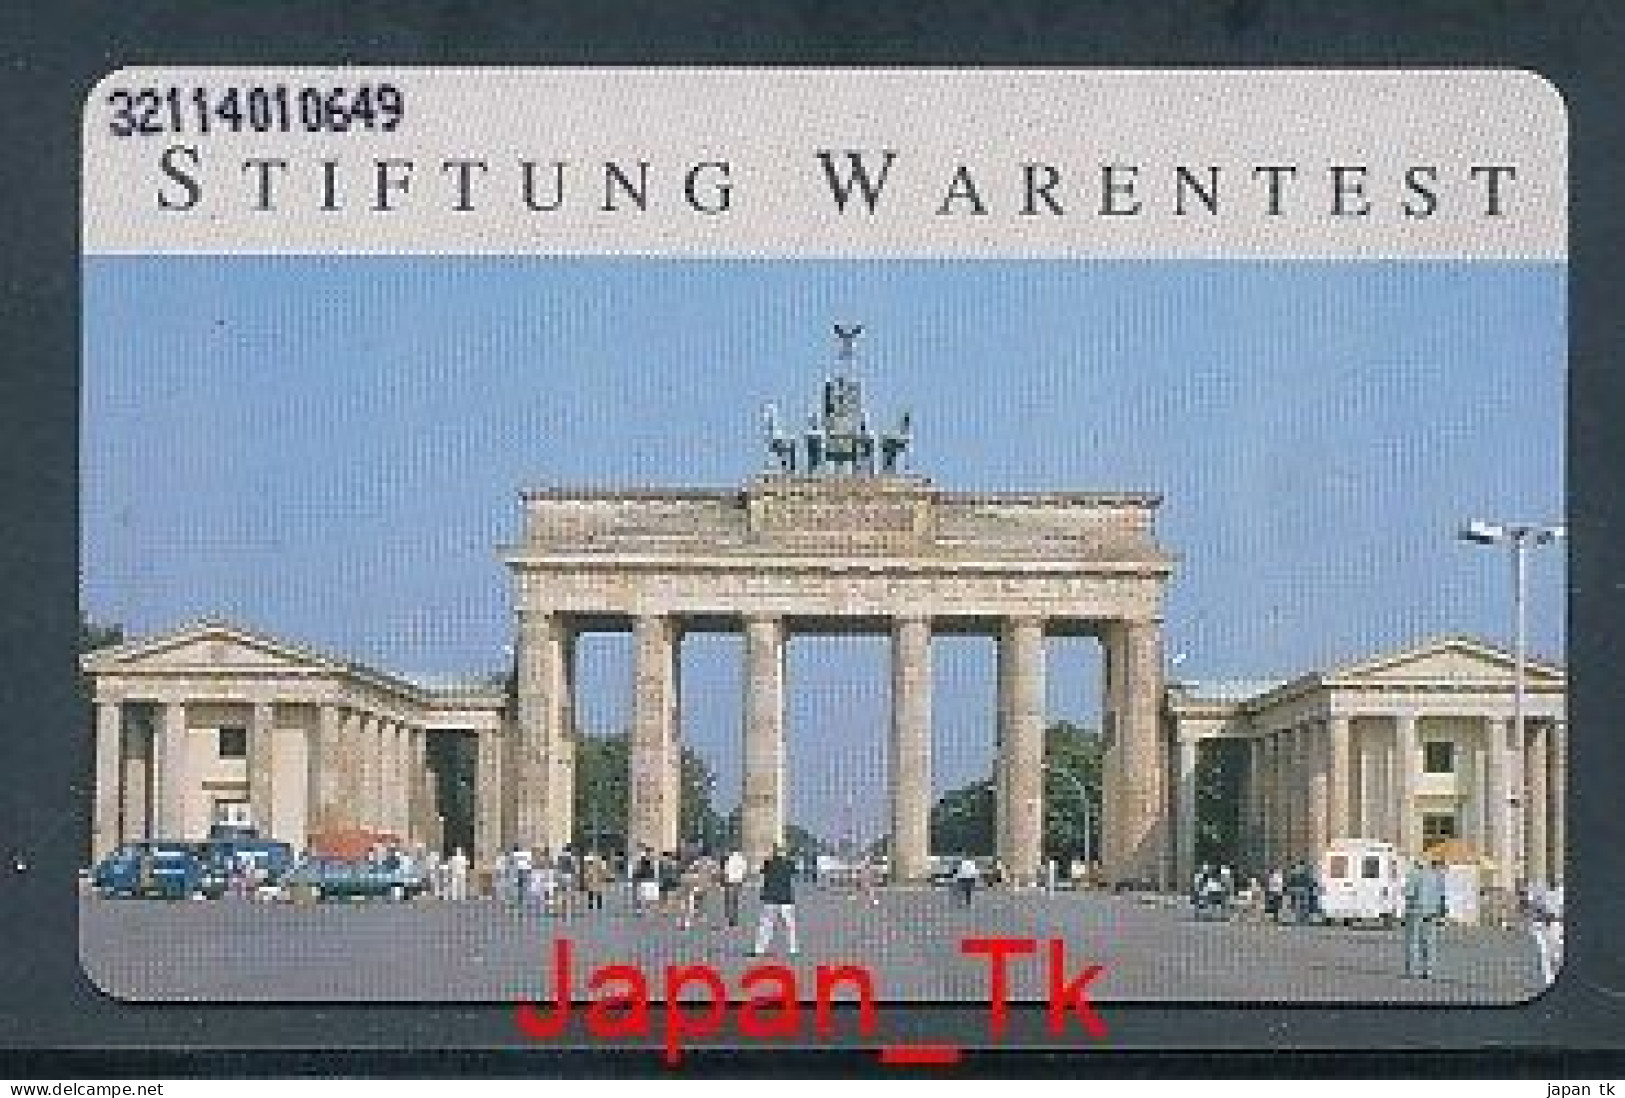 GERMANY O 252 92 Stiftung Warentest - Aufl  30 000 - Siehe Scan - O-Series: Kundenserie Vom Sammlerservice Ausgeschlossen